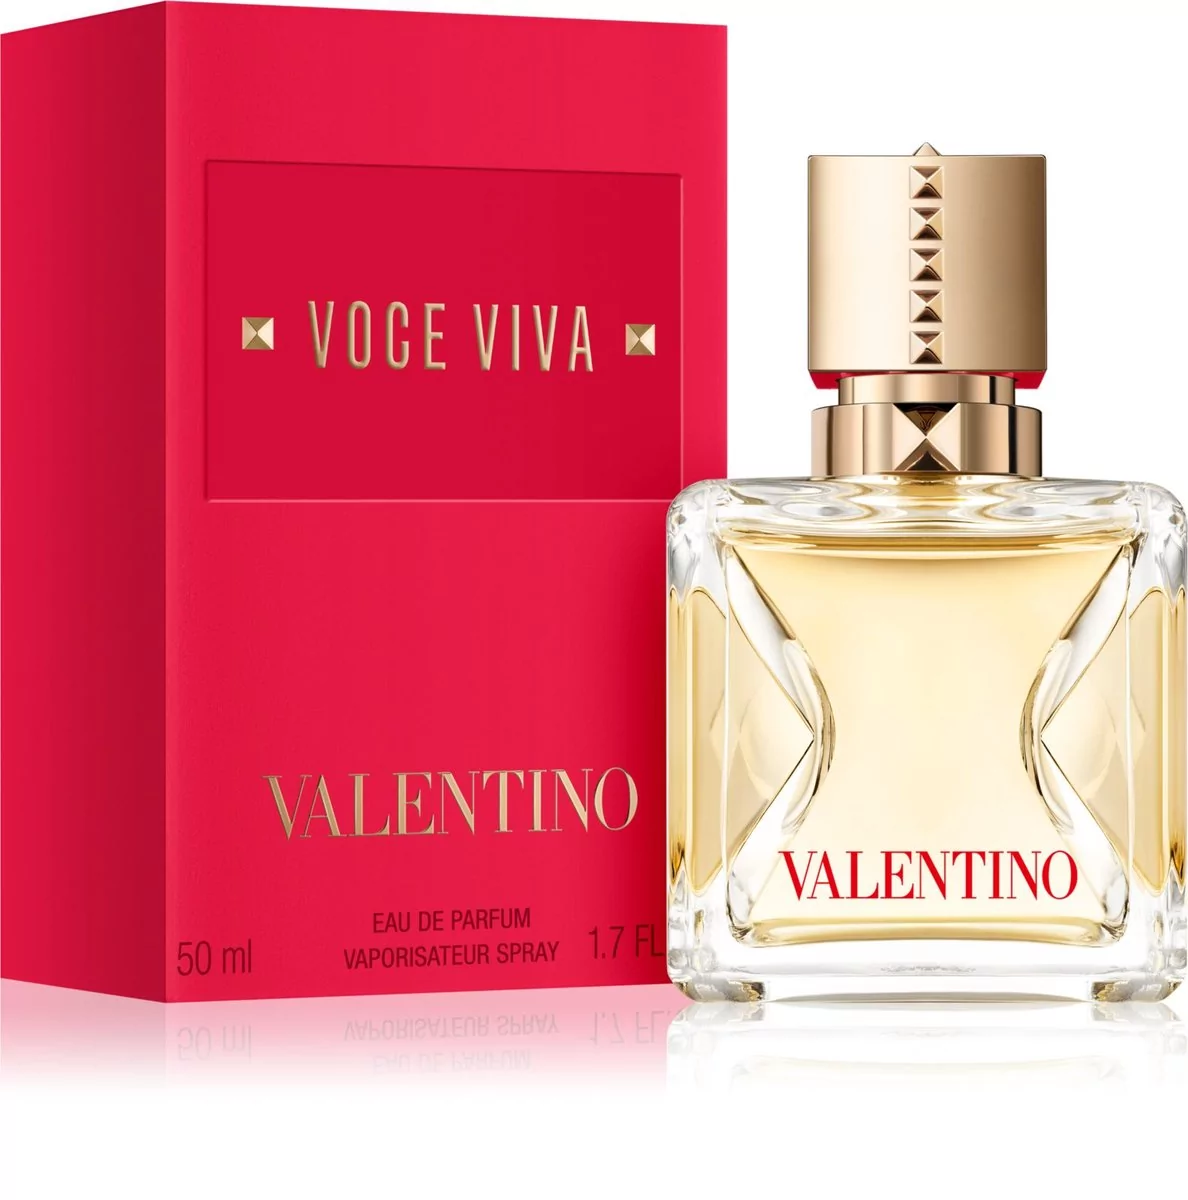 Valentino Voce Viva woda perfumowana 50 ml VAL-VOV02